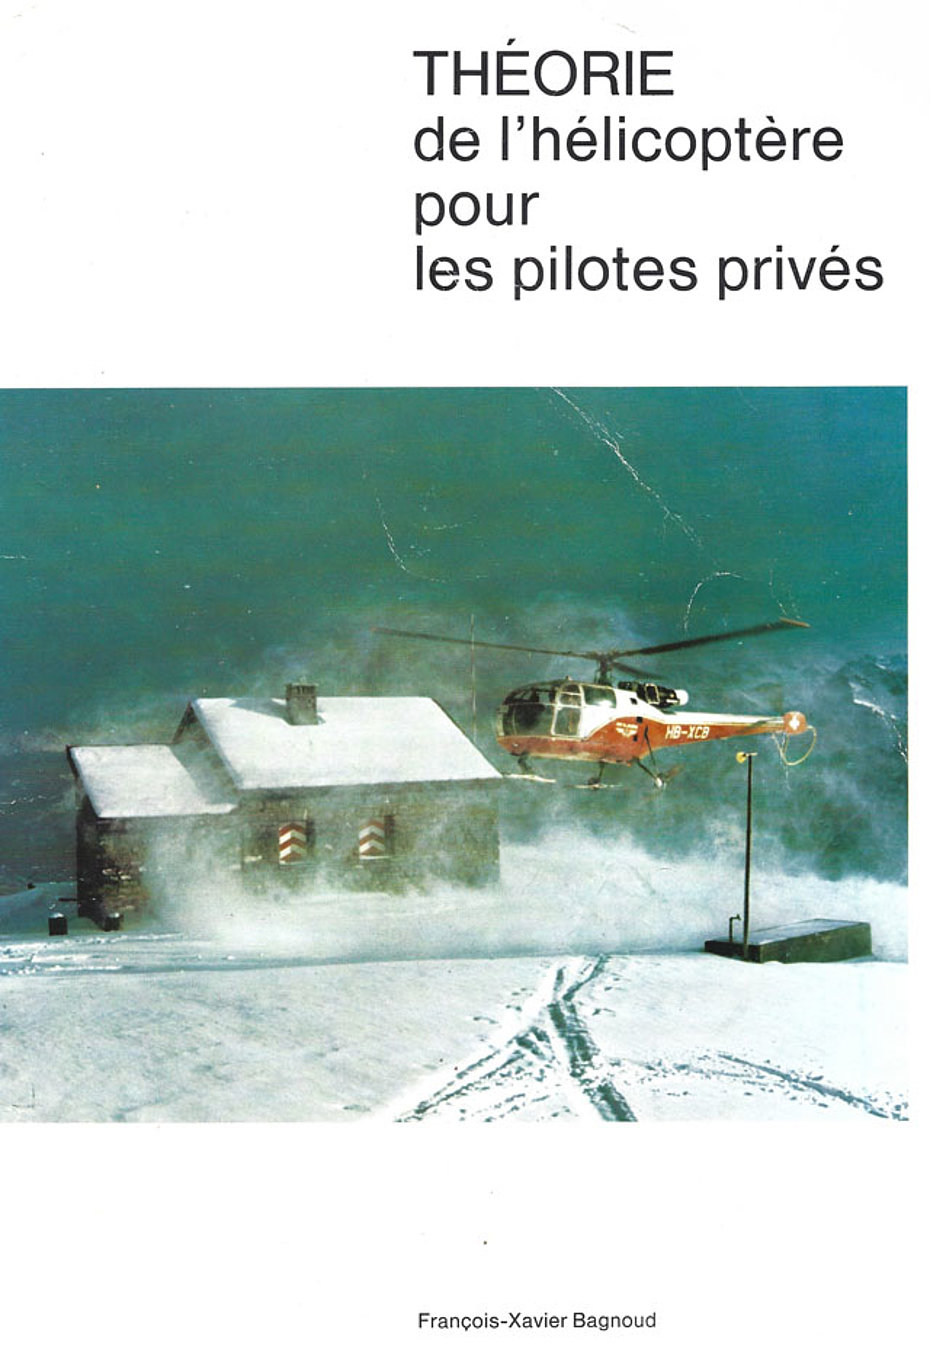 La copertina del libro scritto da François-Xavier Bagnoud (JP Allet)